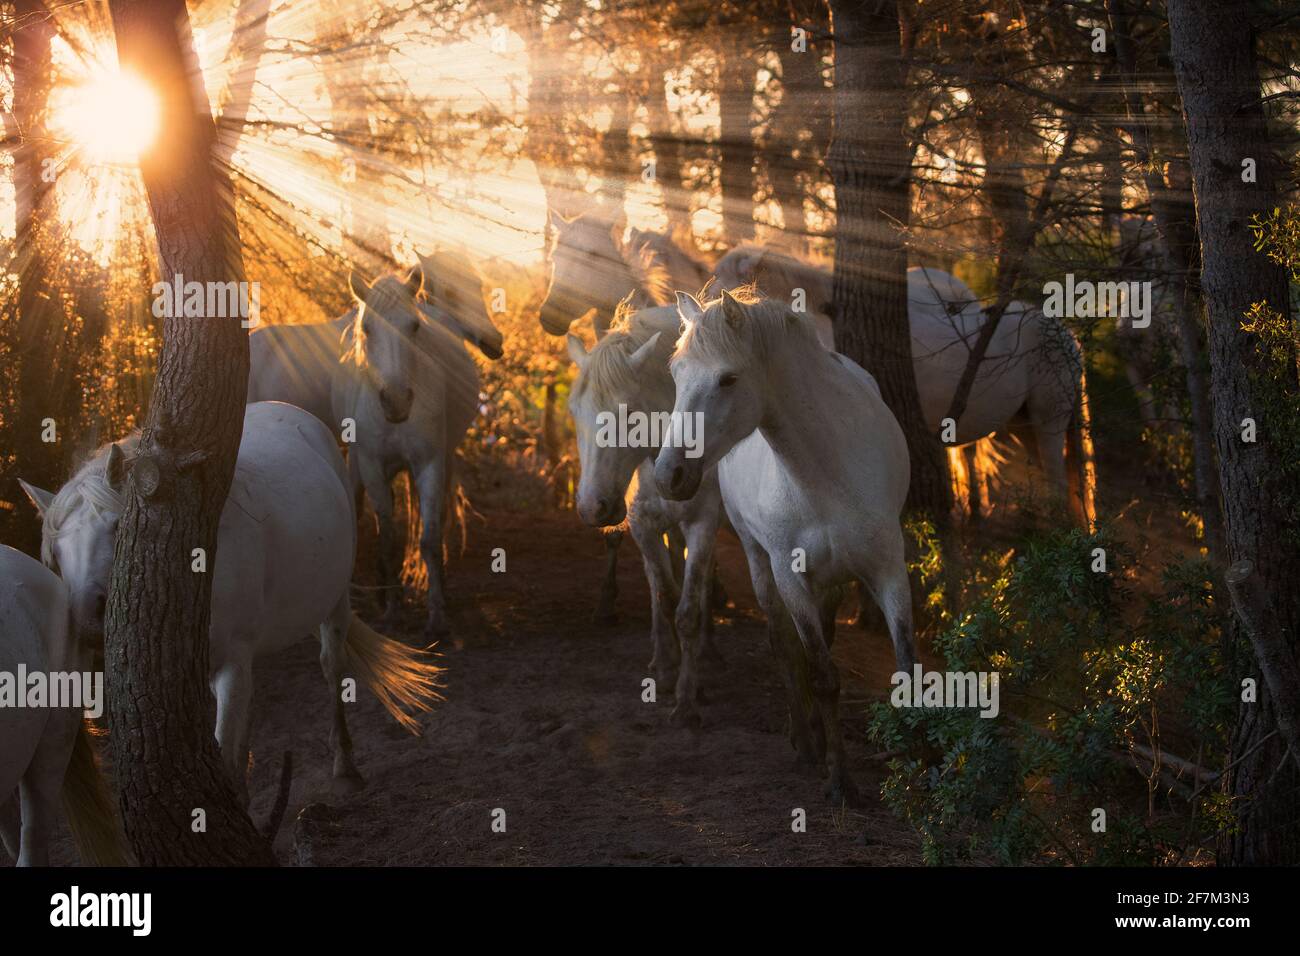 Un grupo de caballos de Camarague están representados en el bosque al atardecer. CAMARGUE, FRANCIA: El momento ÉPICO en el que se harán dos impresionantes sementales para determinar quién es el Foto de stock